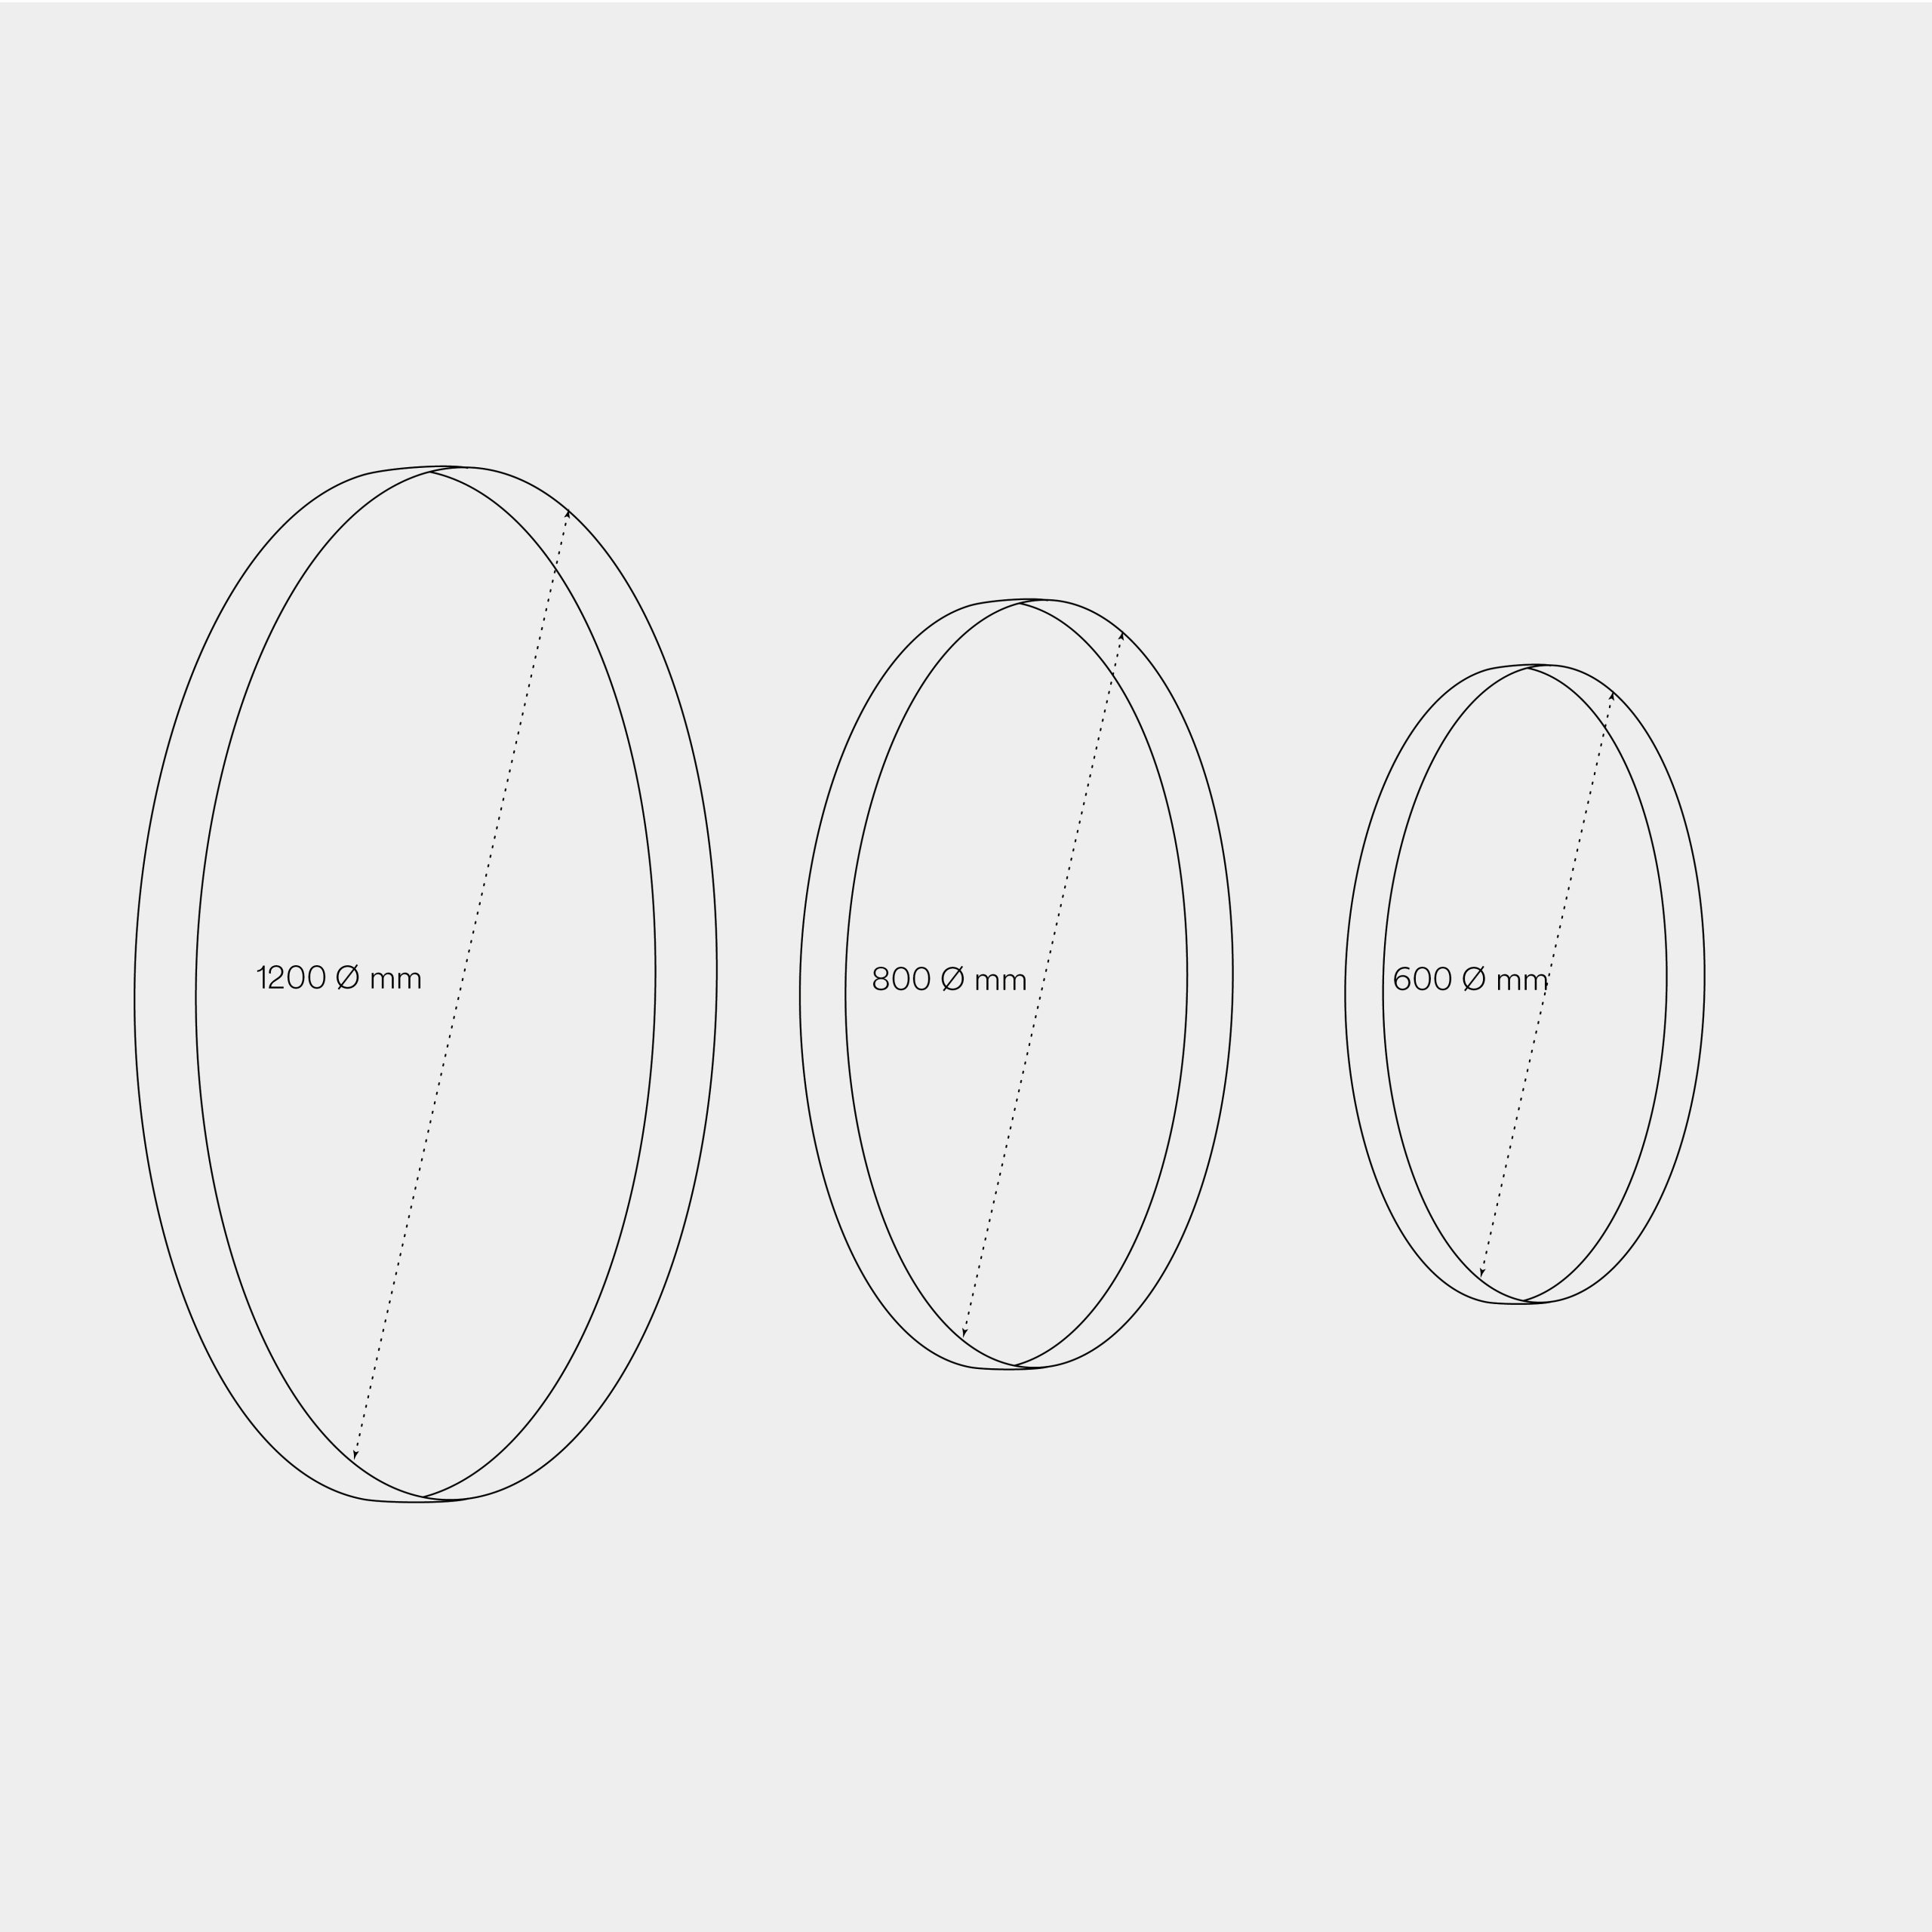 Dimensioni del pannello acustico decorativo Circle Foam